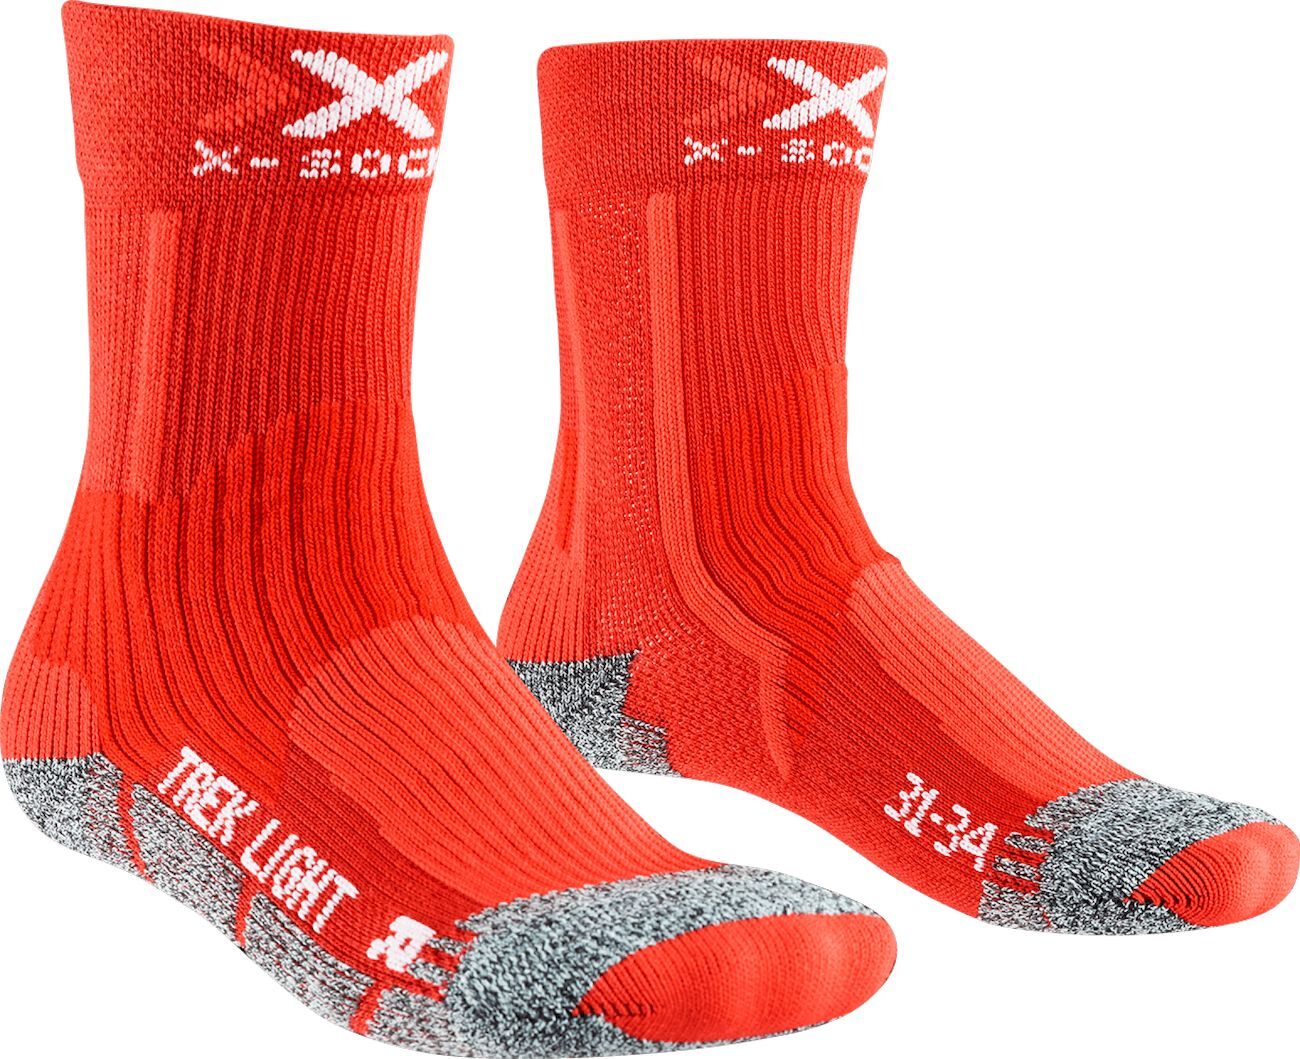 X-Socks Trek XCTN - Hiking socks - Kids